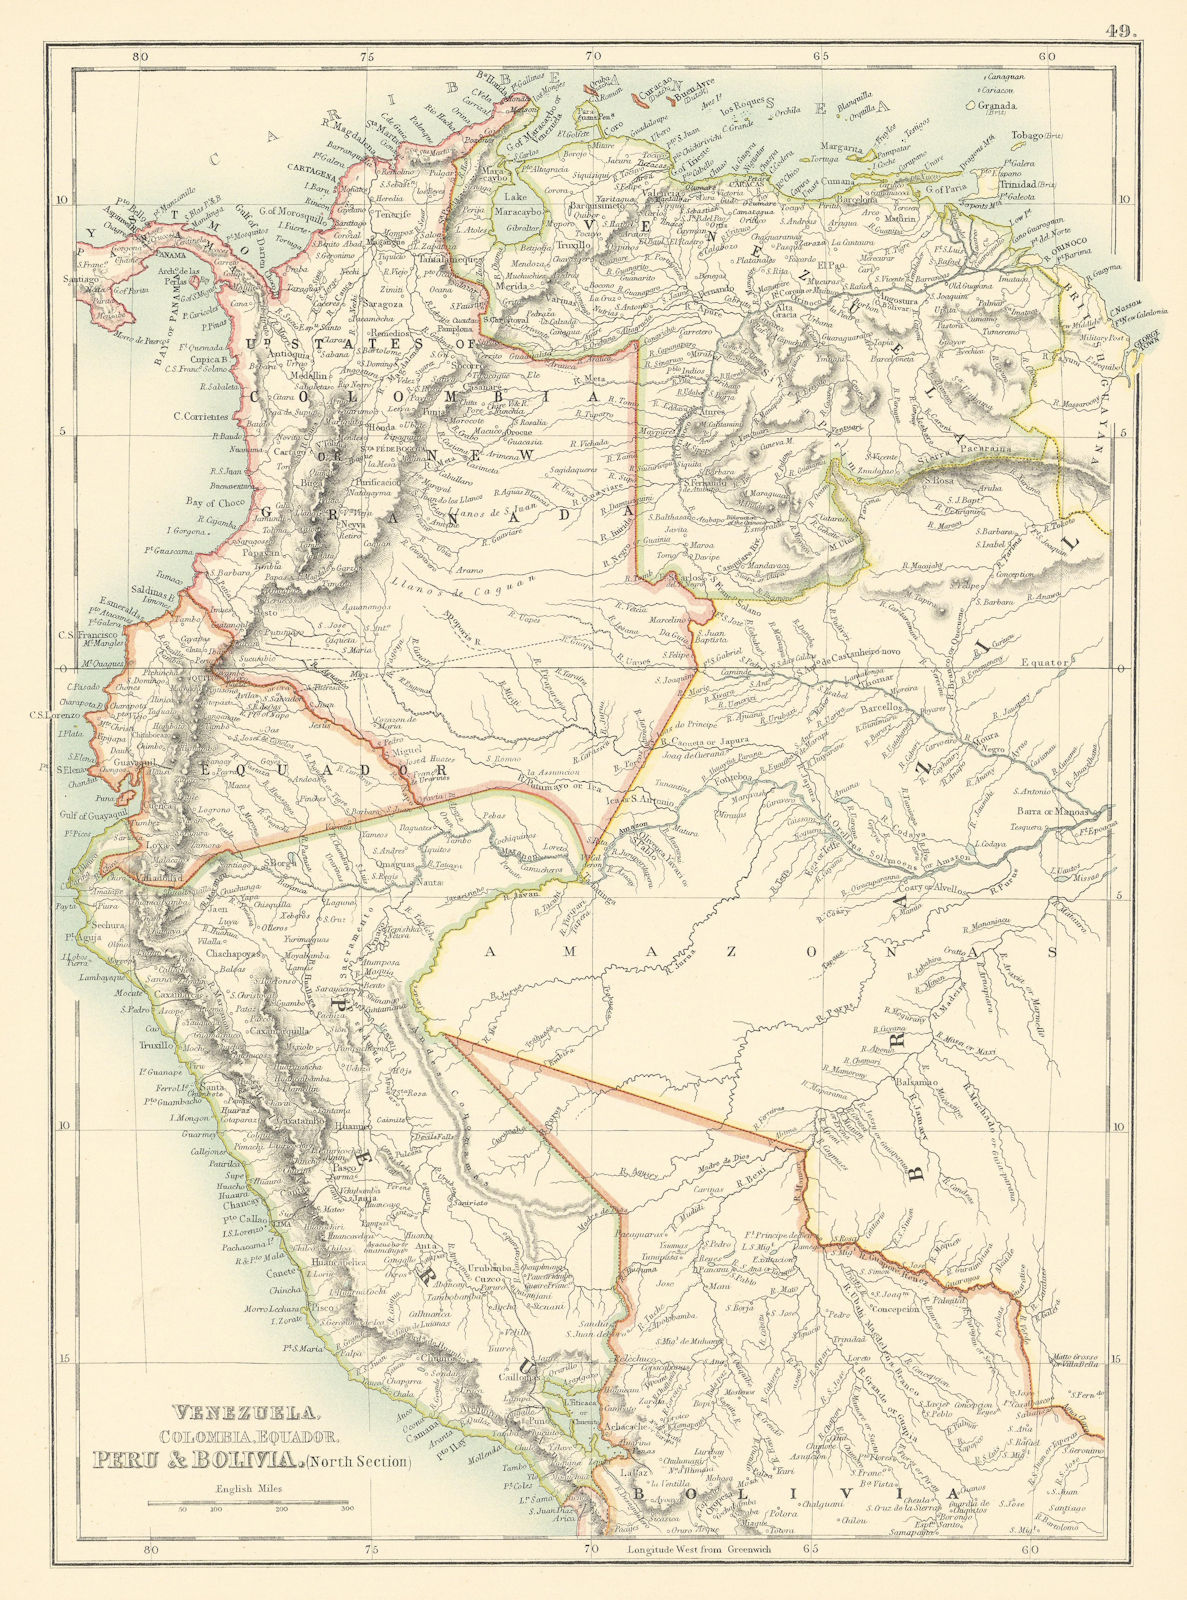 Venezuela, Colombia, Equador & Peru. Andean States Ecuador. BARTHOLOMEW 1898 map